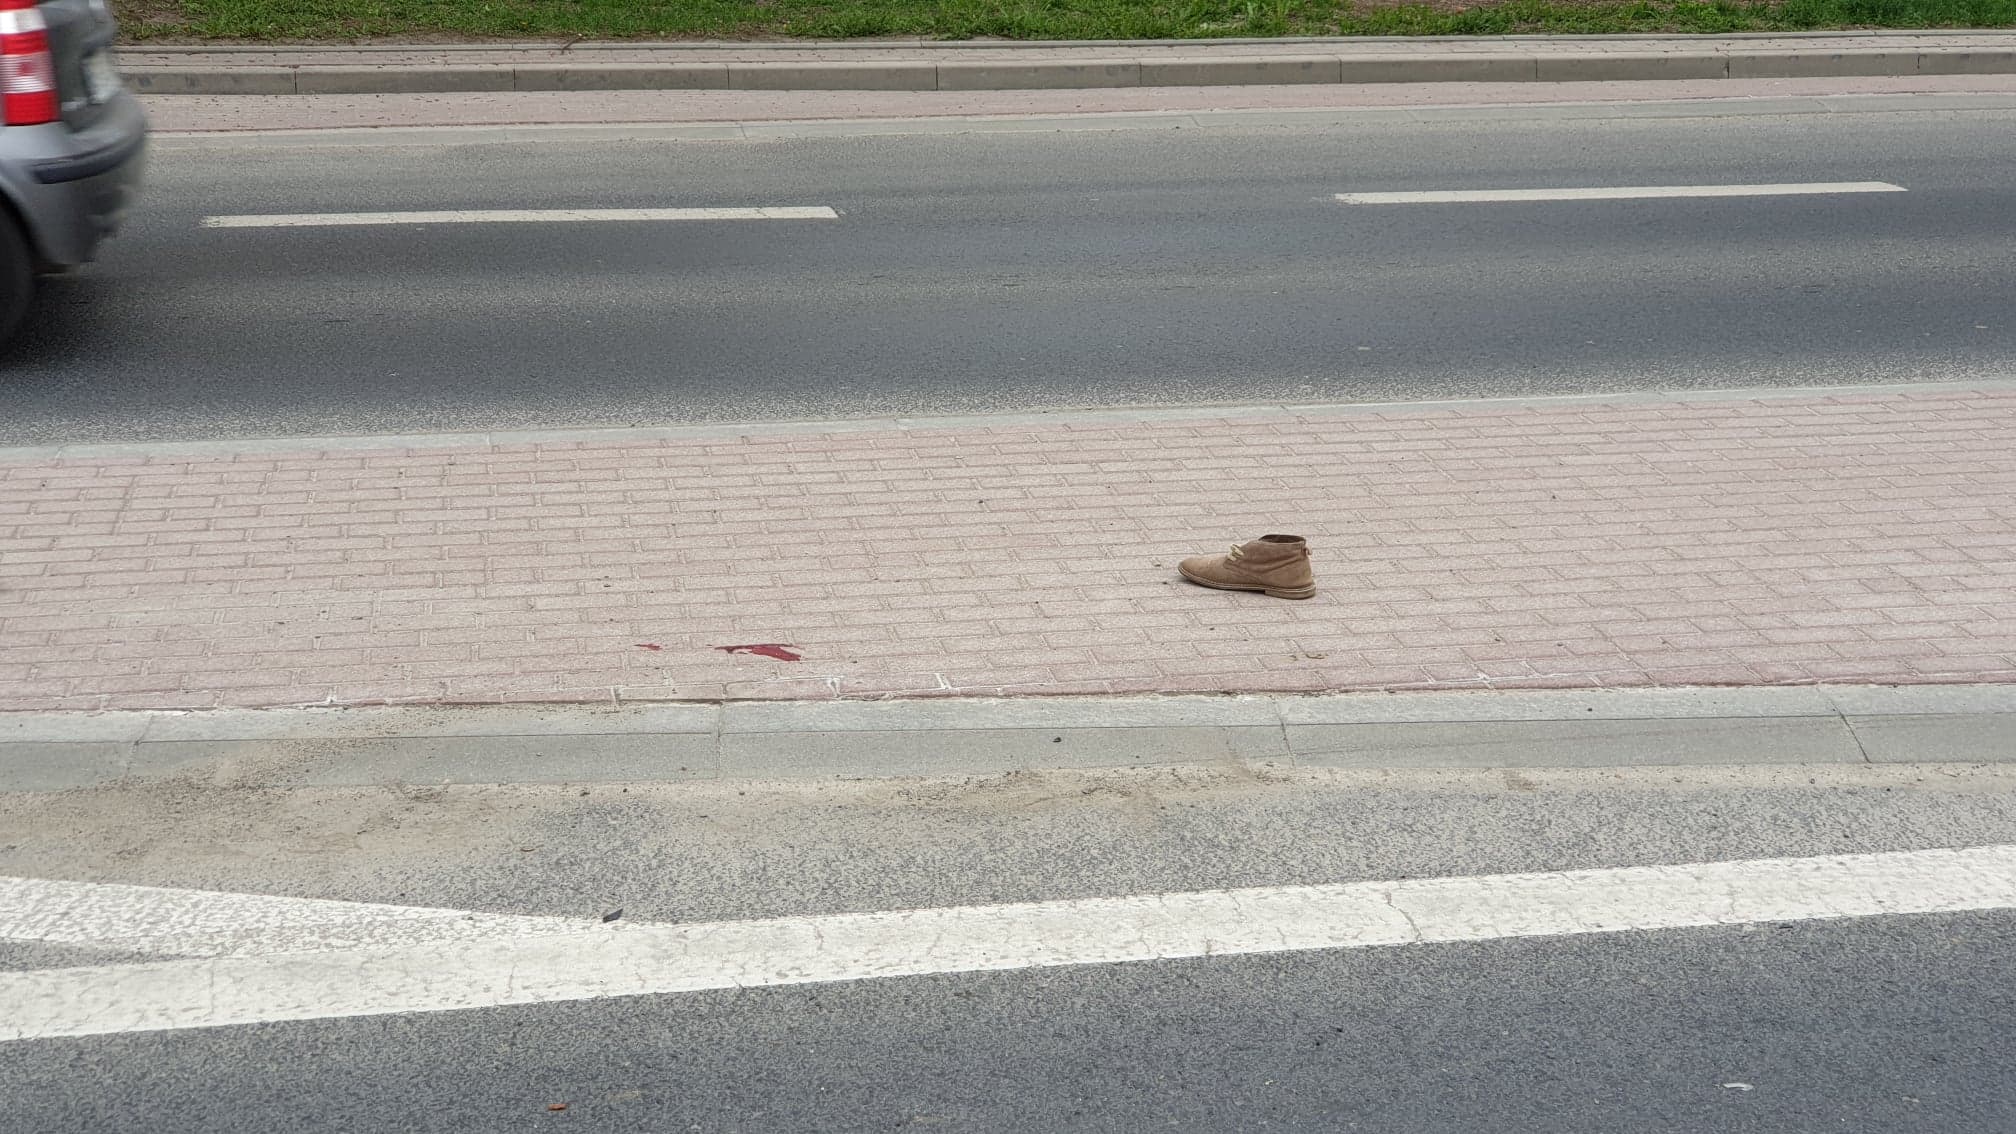 Z OSTATNIEJ CHWILI: Potrącenie pieszego na ul. Dmowskiego - zdarzenie zarejestrowane przez kamerę samochodową [ZDJĘCIA+VIDEO]  - Zdjęcie główne